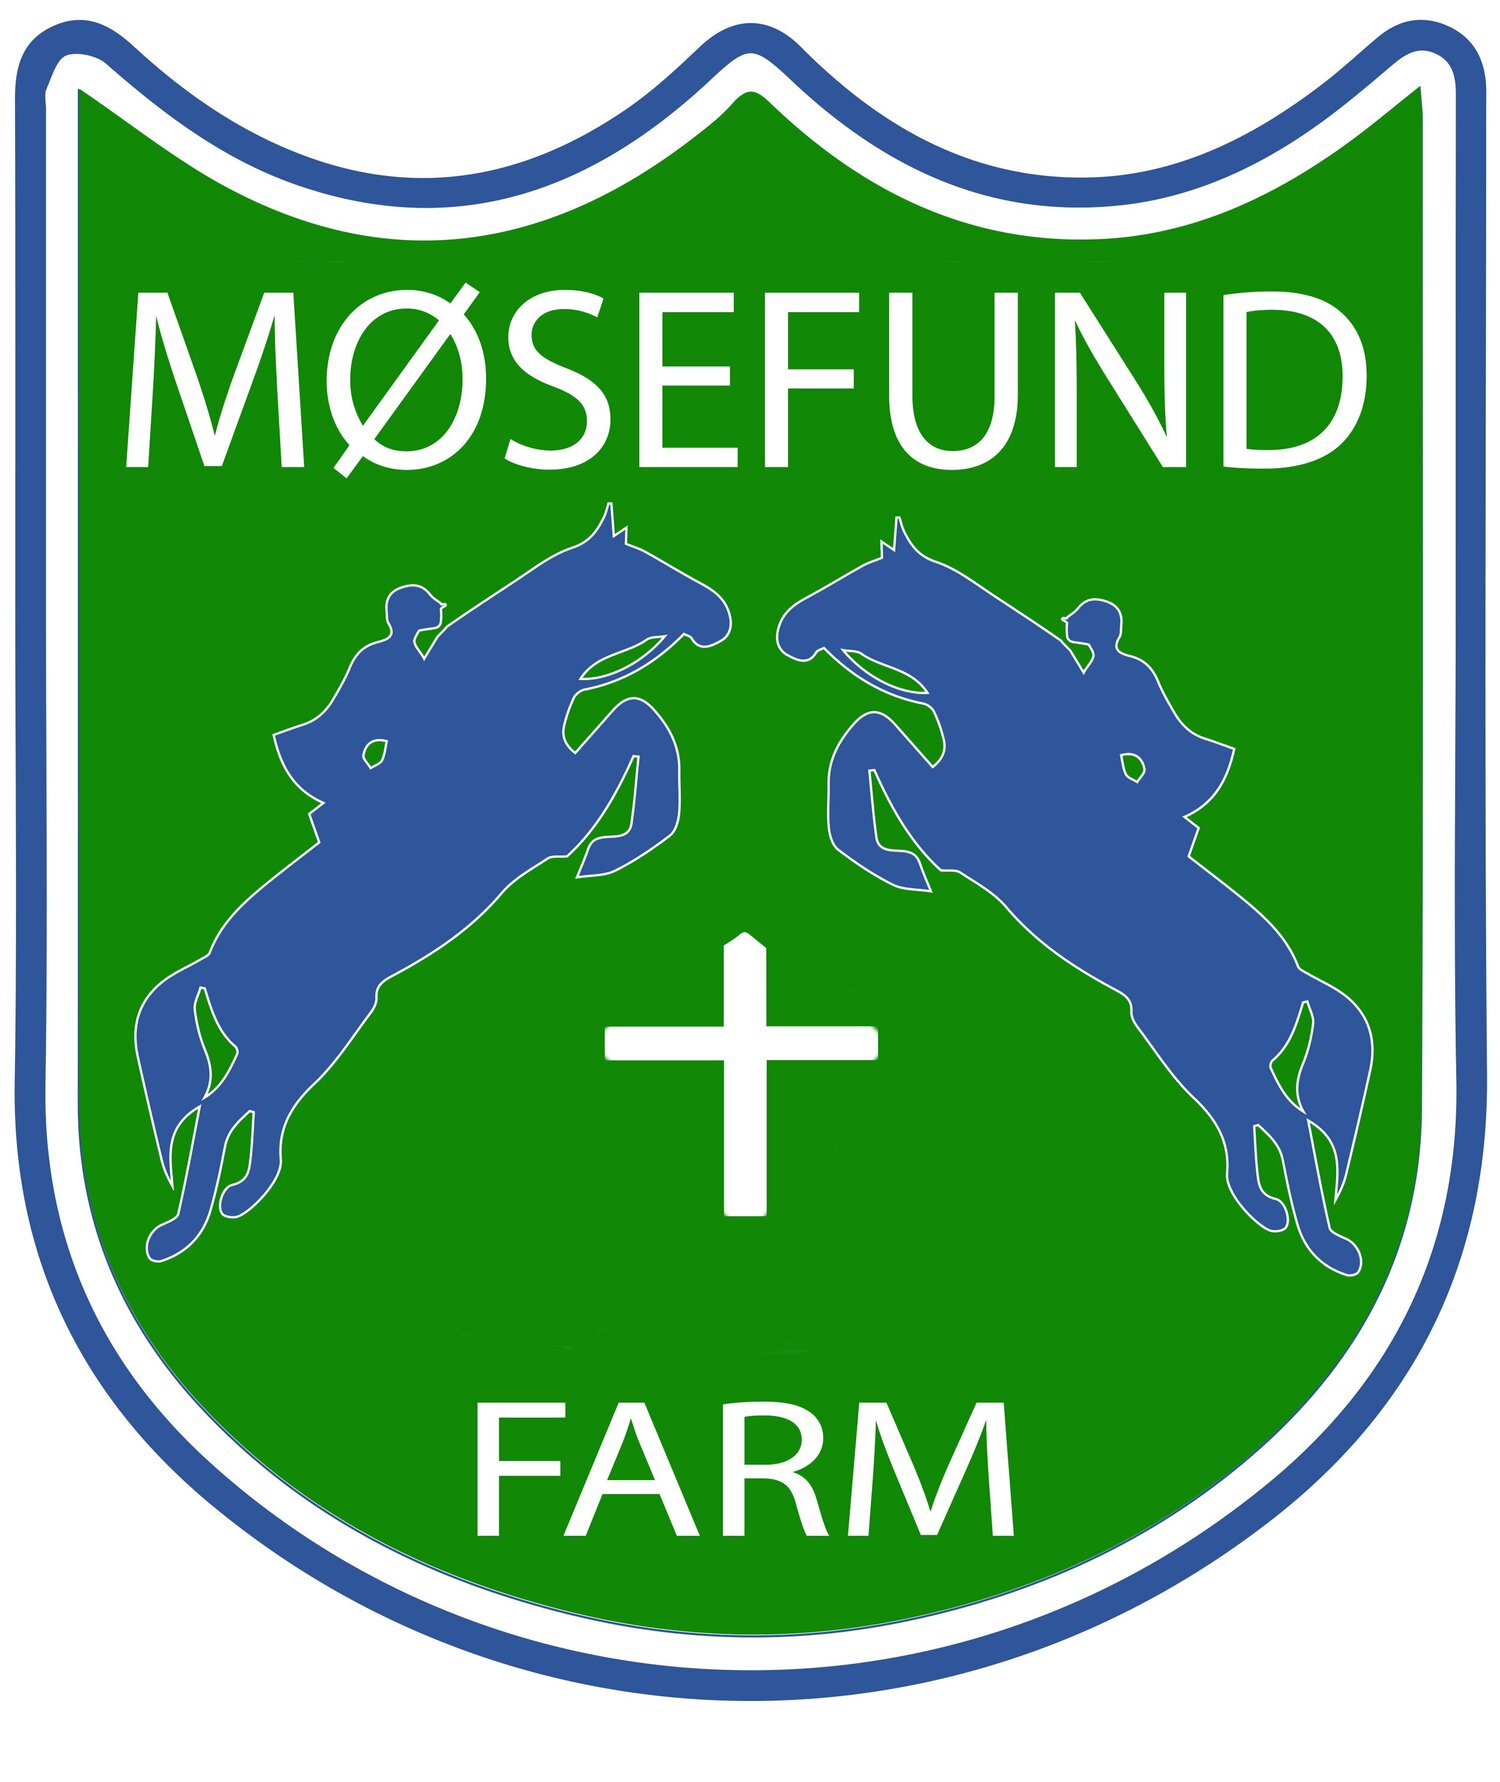 Mosefund Farm